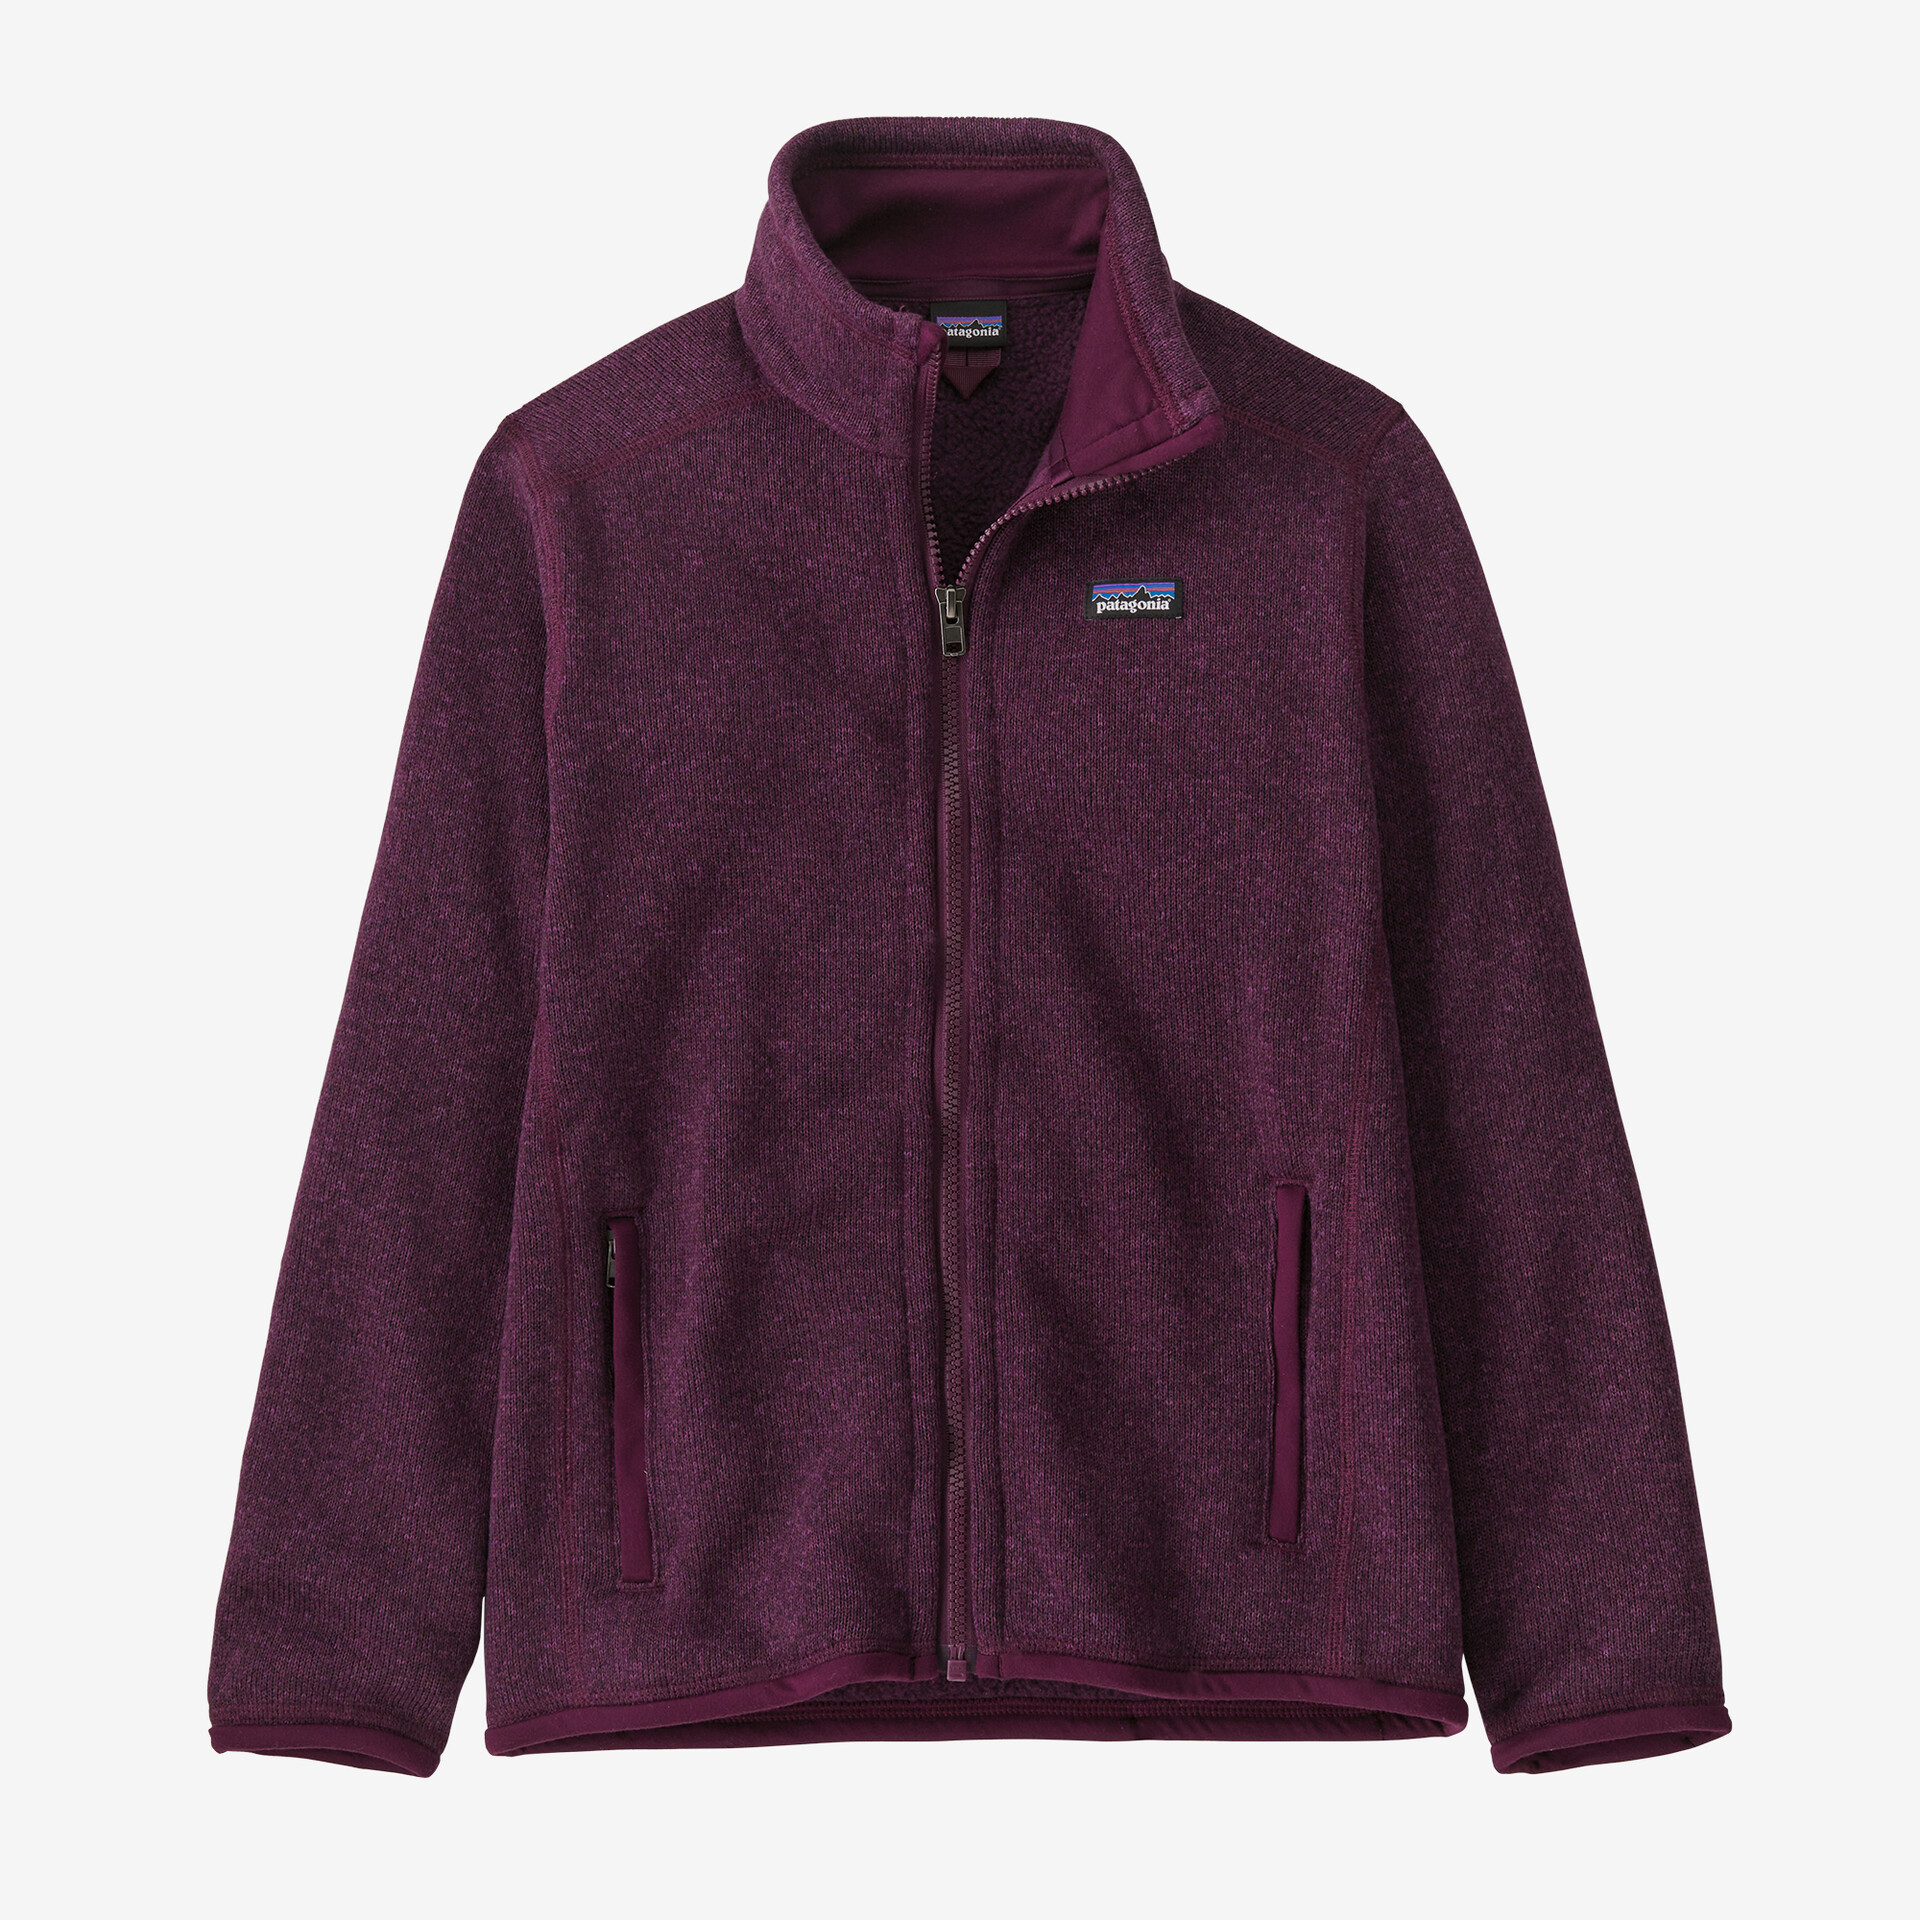 Детский свитер, флисовая куртка Patagonia, цвет Night Plum детский свитер флисовая куртка patagonia цвет stonewash